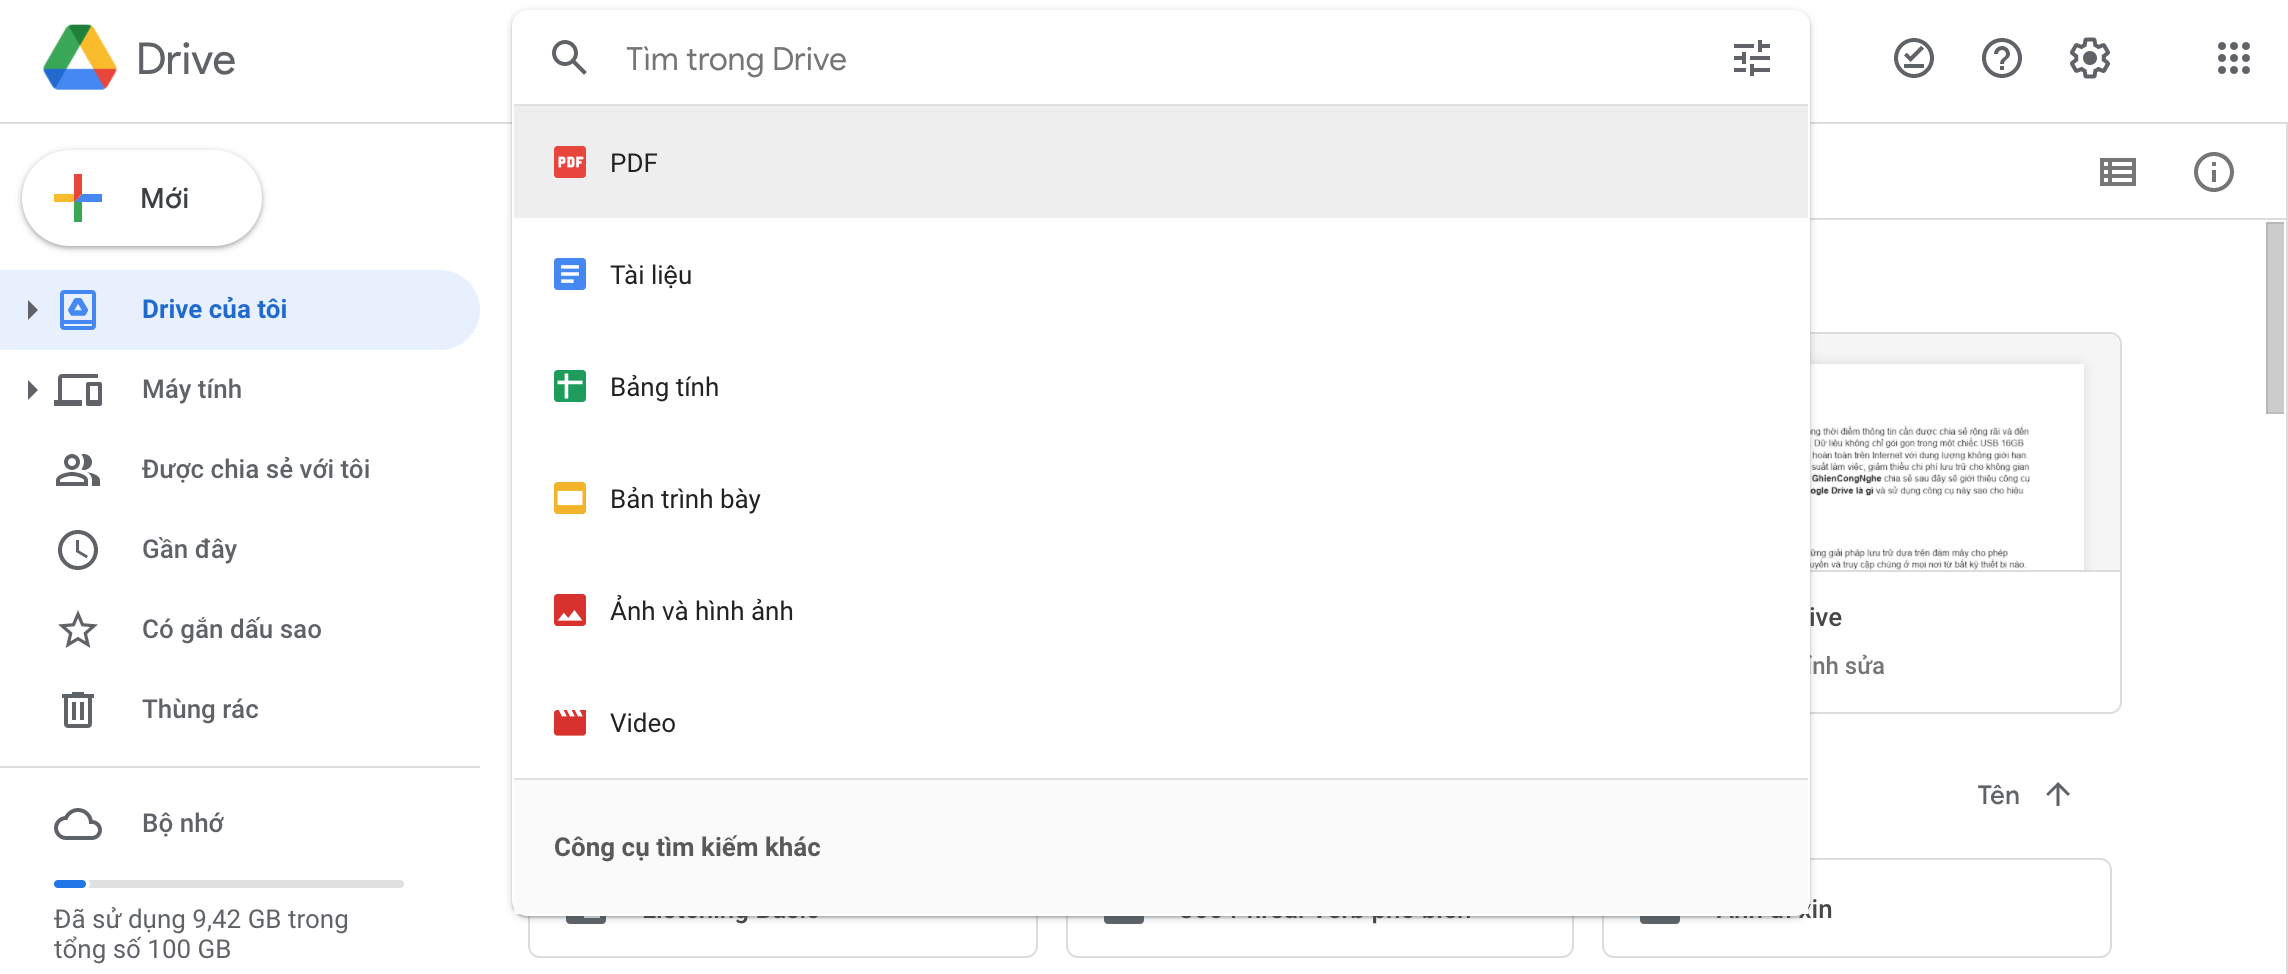 Google Drive là gì? Cách sử dụng Google Drive đơn giản cho 1 người mới bắt đầu